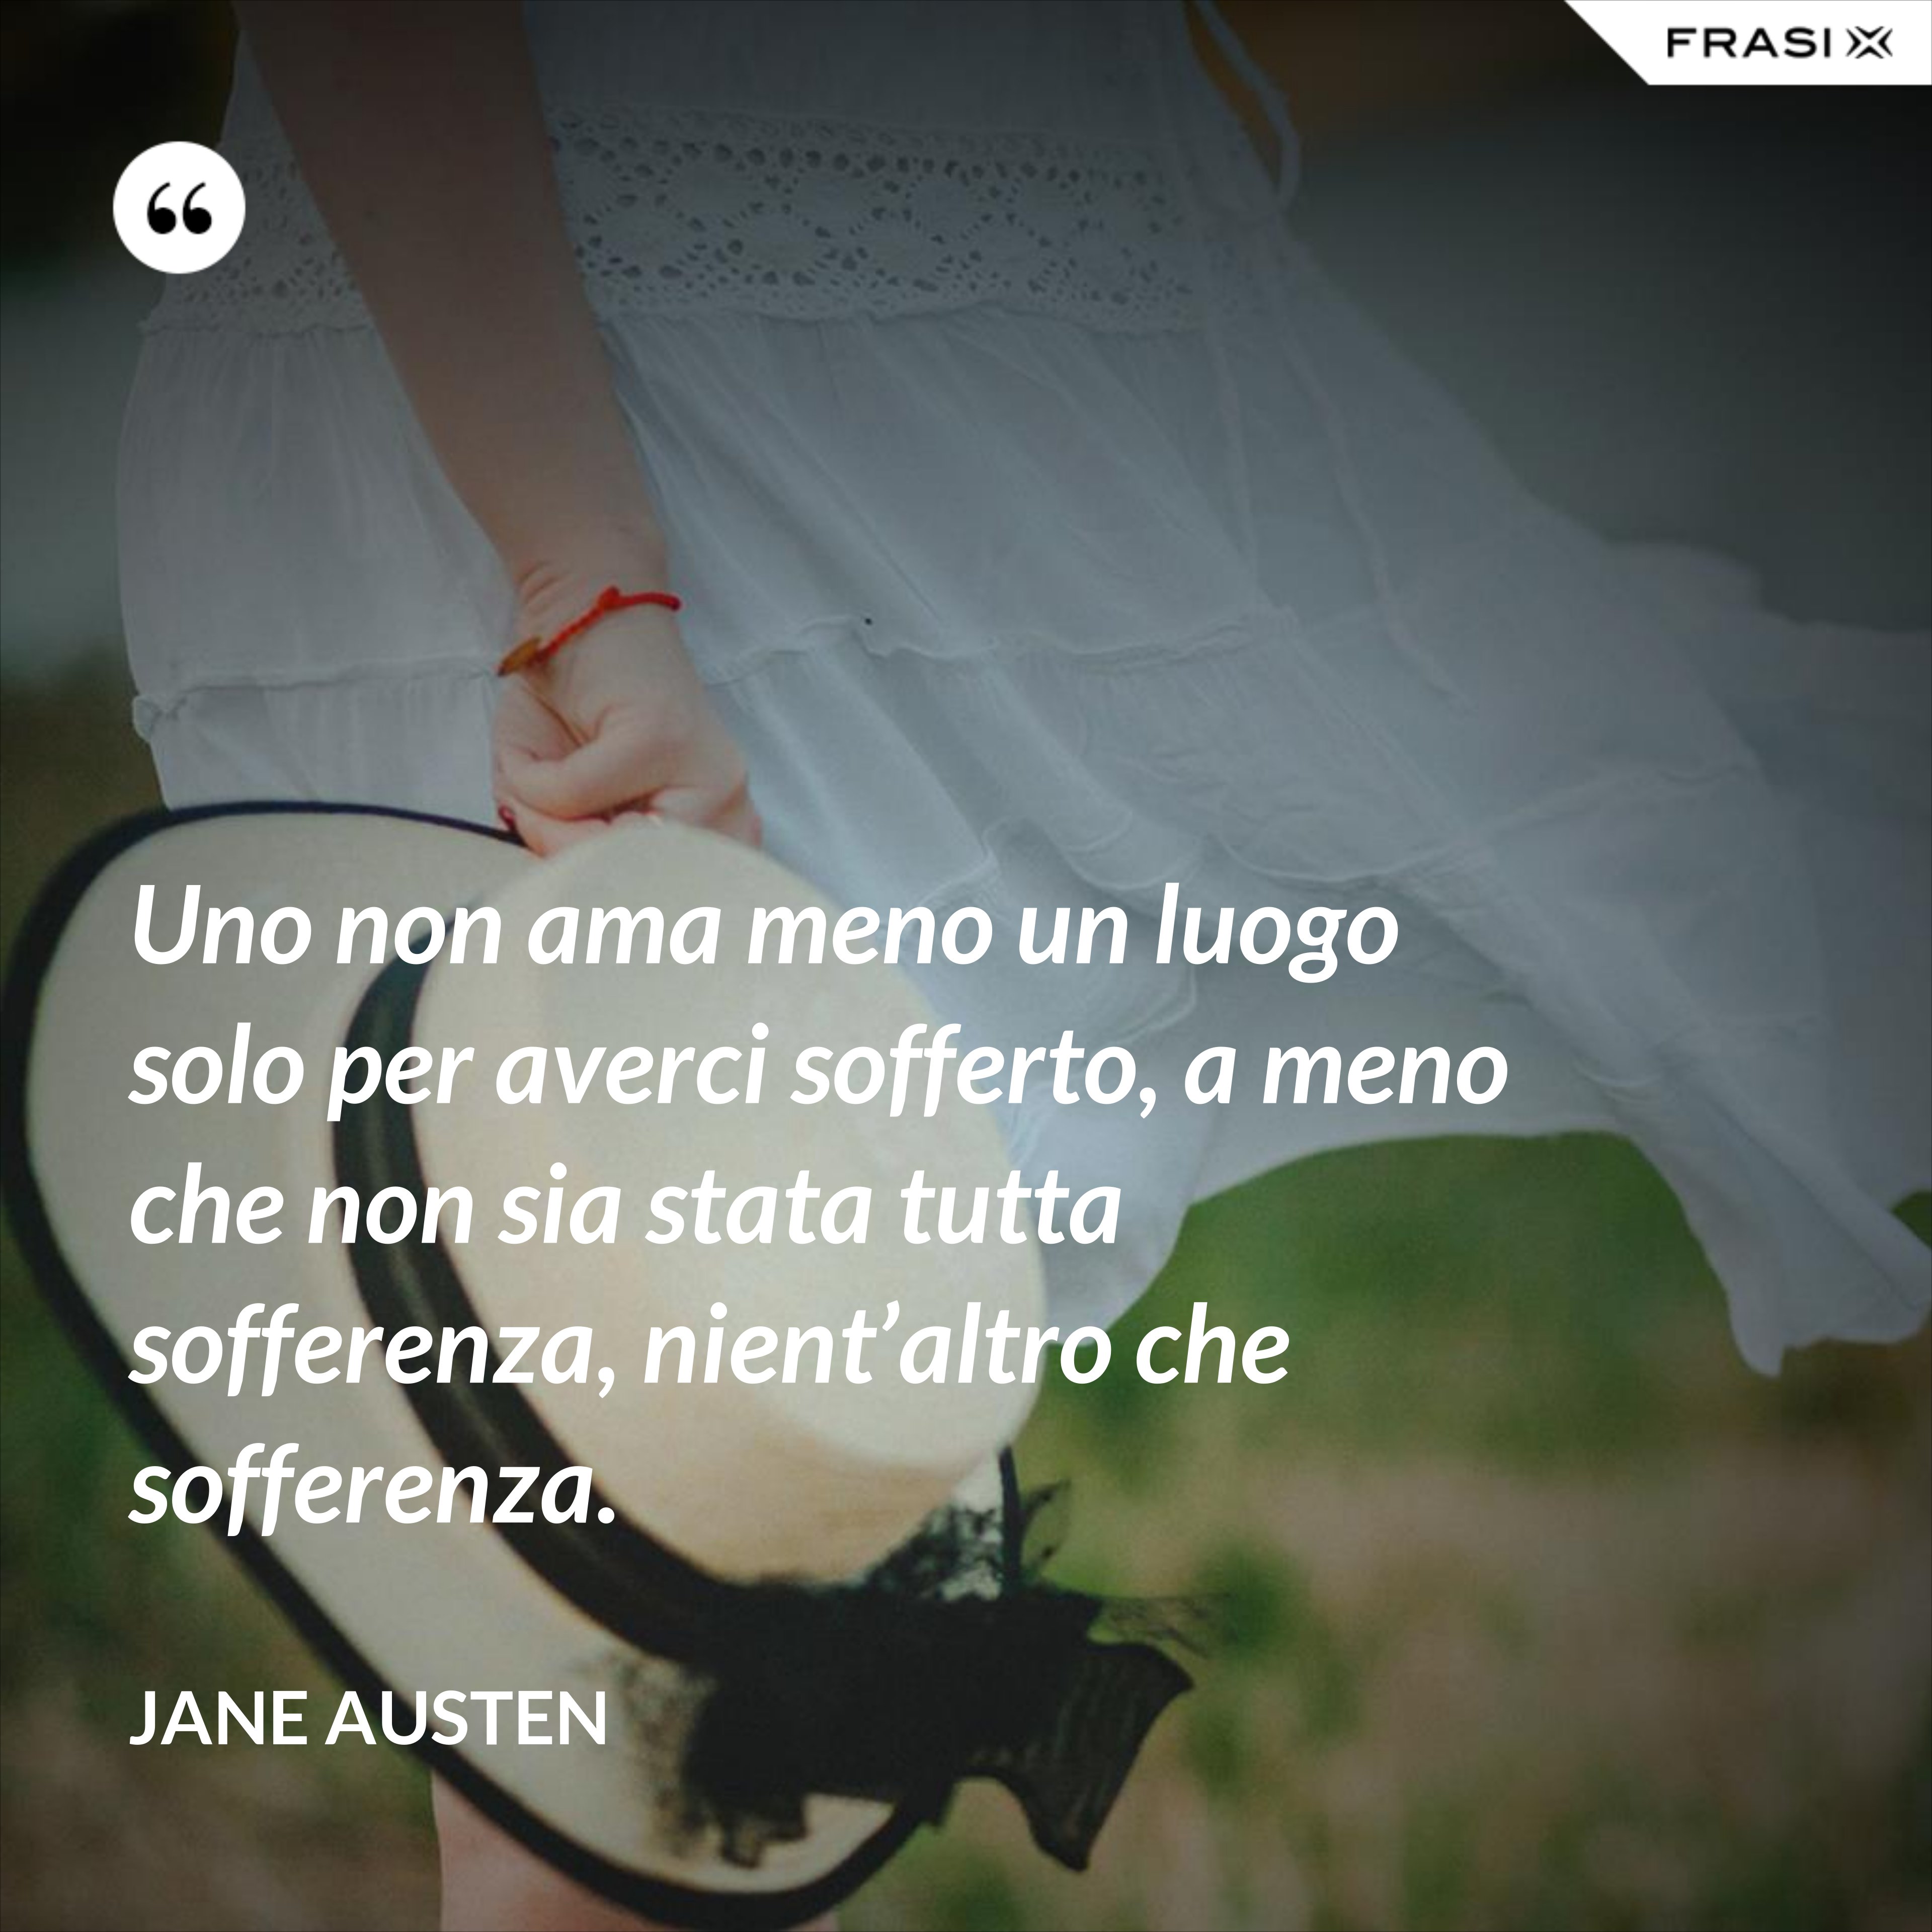 Uno non ama meno un luogo solo per averci sofferto, a meno che non sia stata tutta sofferenza, nient’altro che sofferenza. - Jane Austen